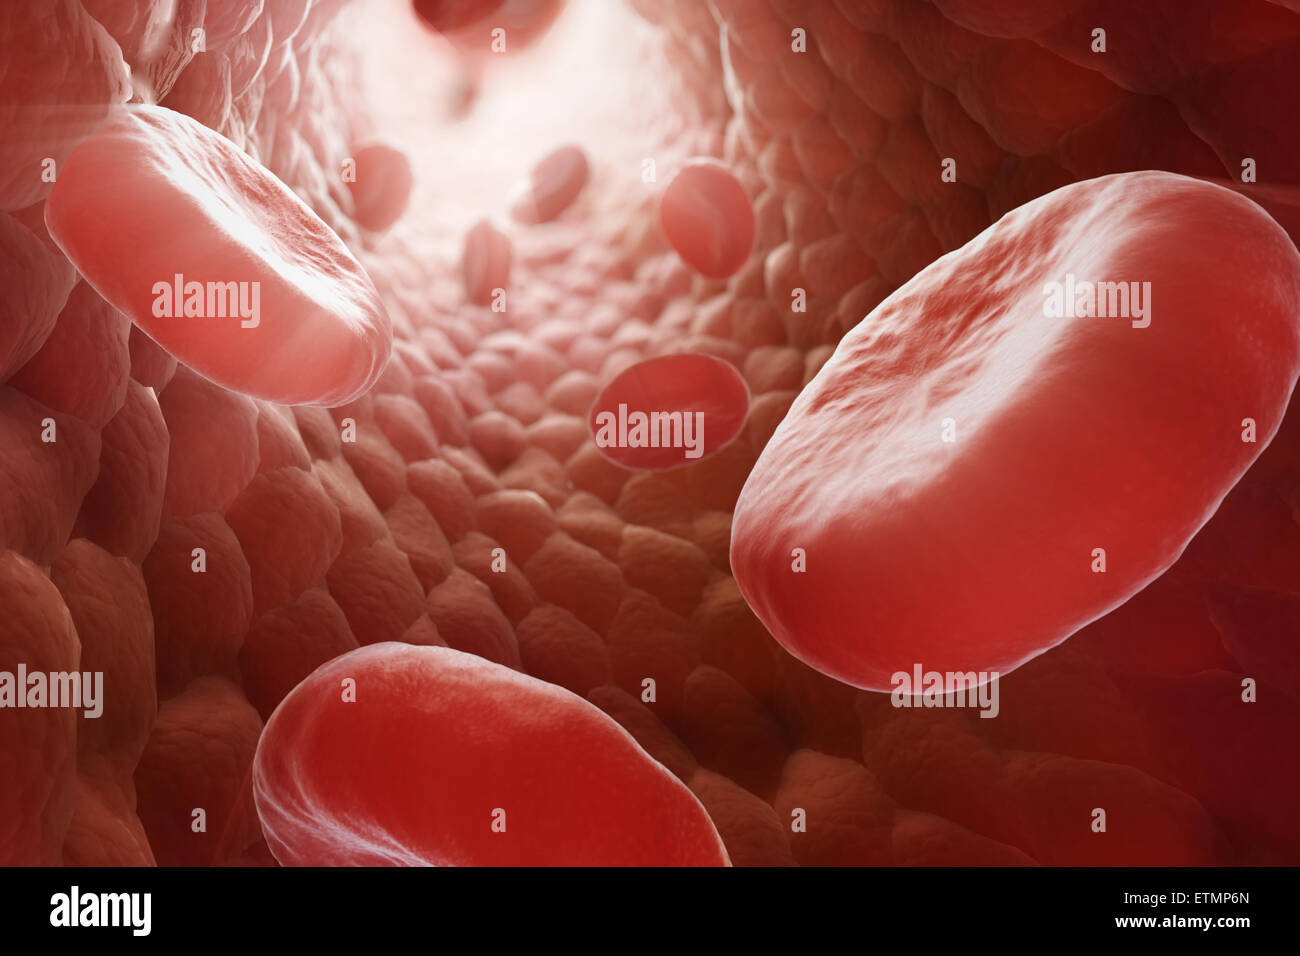 Stilizzata illustrazione che mostra le cellule rosse del sangue che fluisce attraverso il flusso sanguigno. Foto Stock